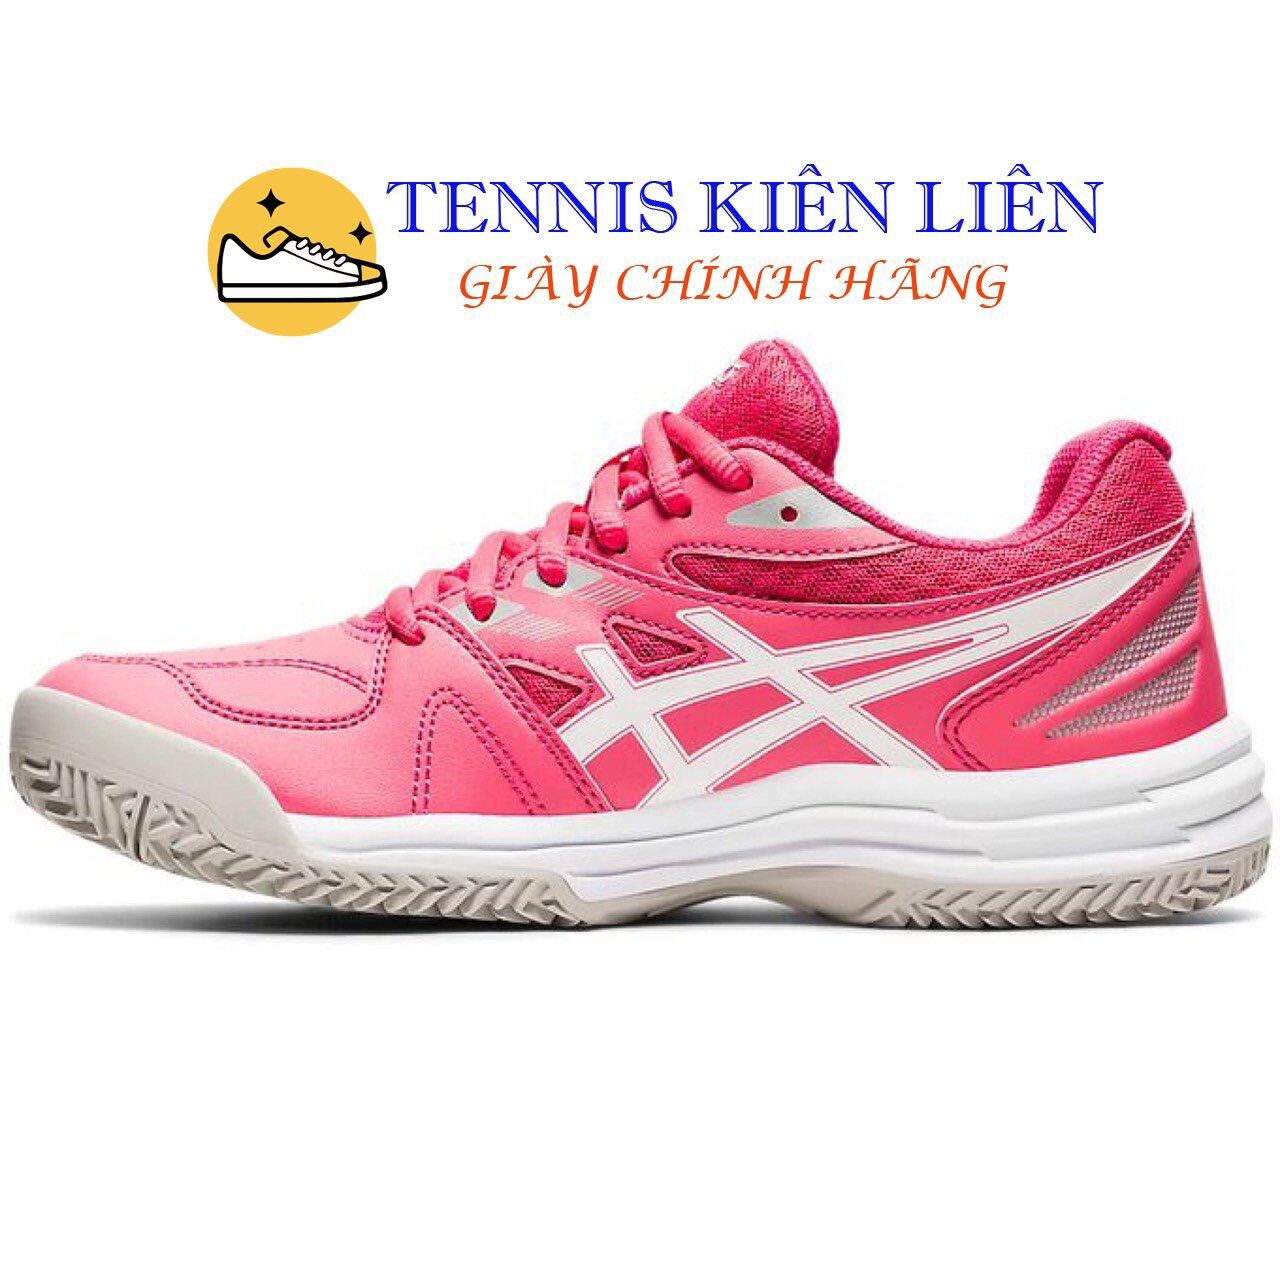 Giày tennis asics court slide 2 nữ